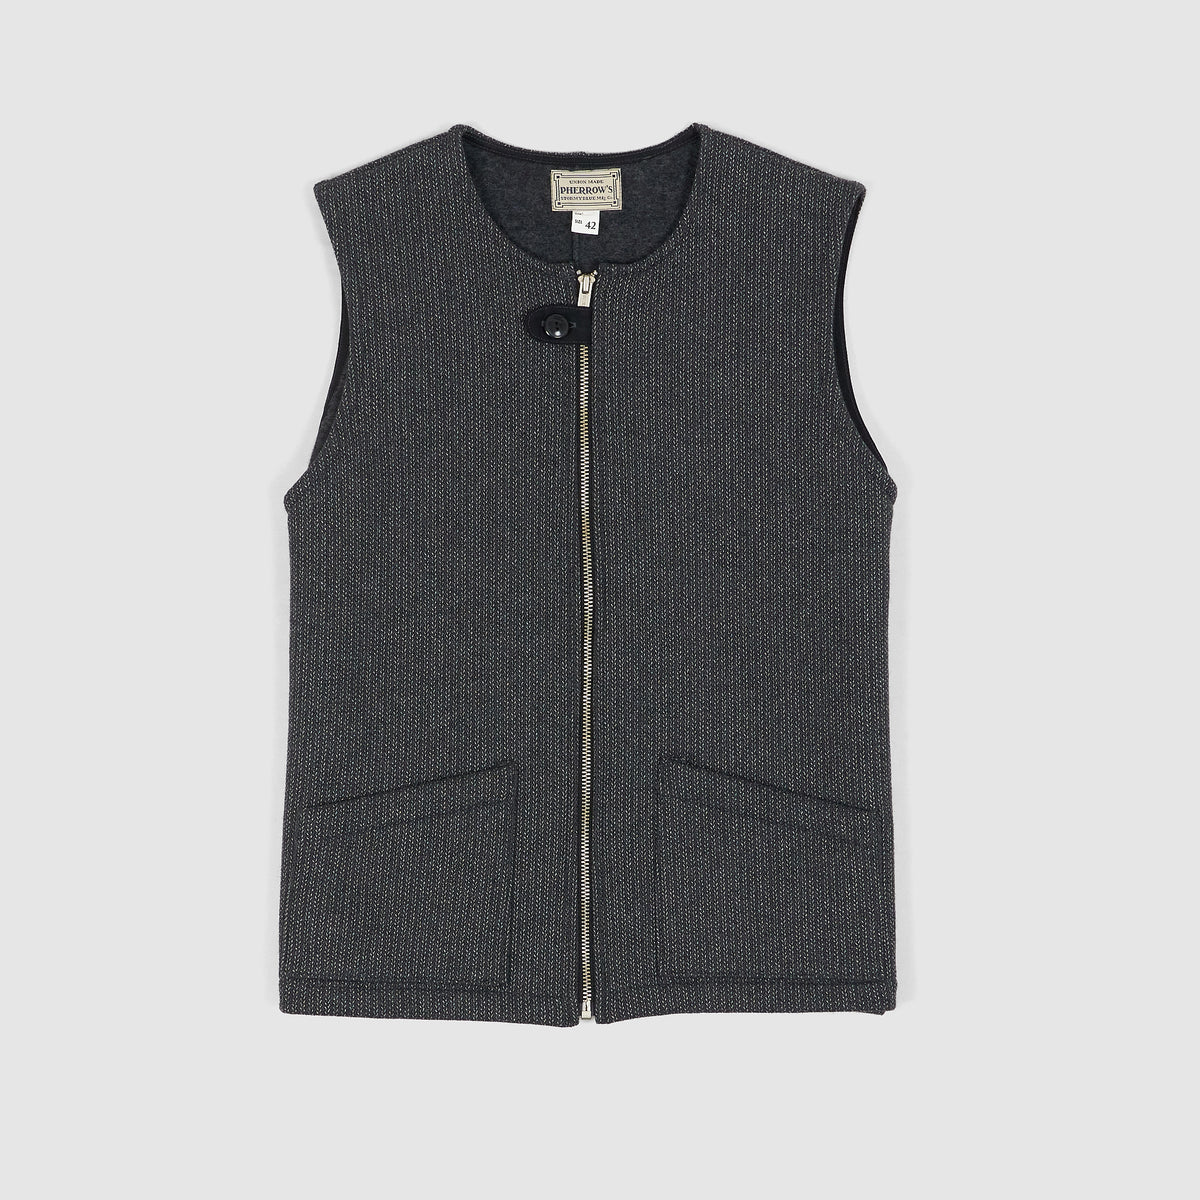 Pherrow`s Brown&#39;s Zip Work Vest